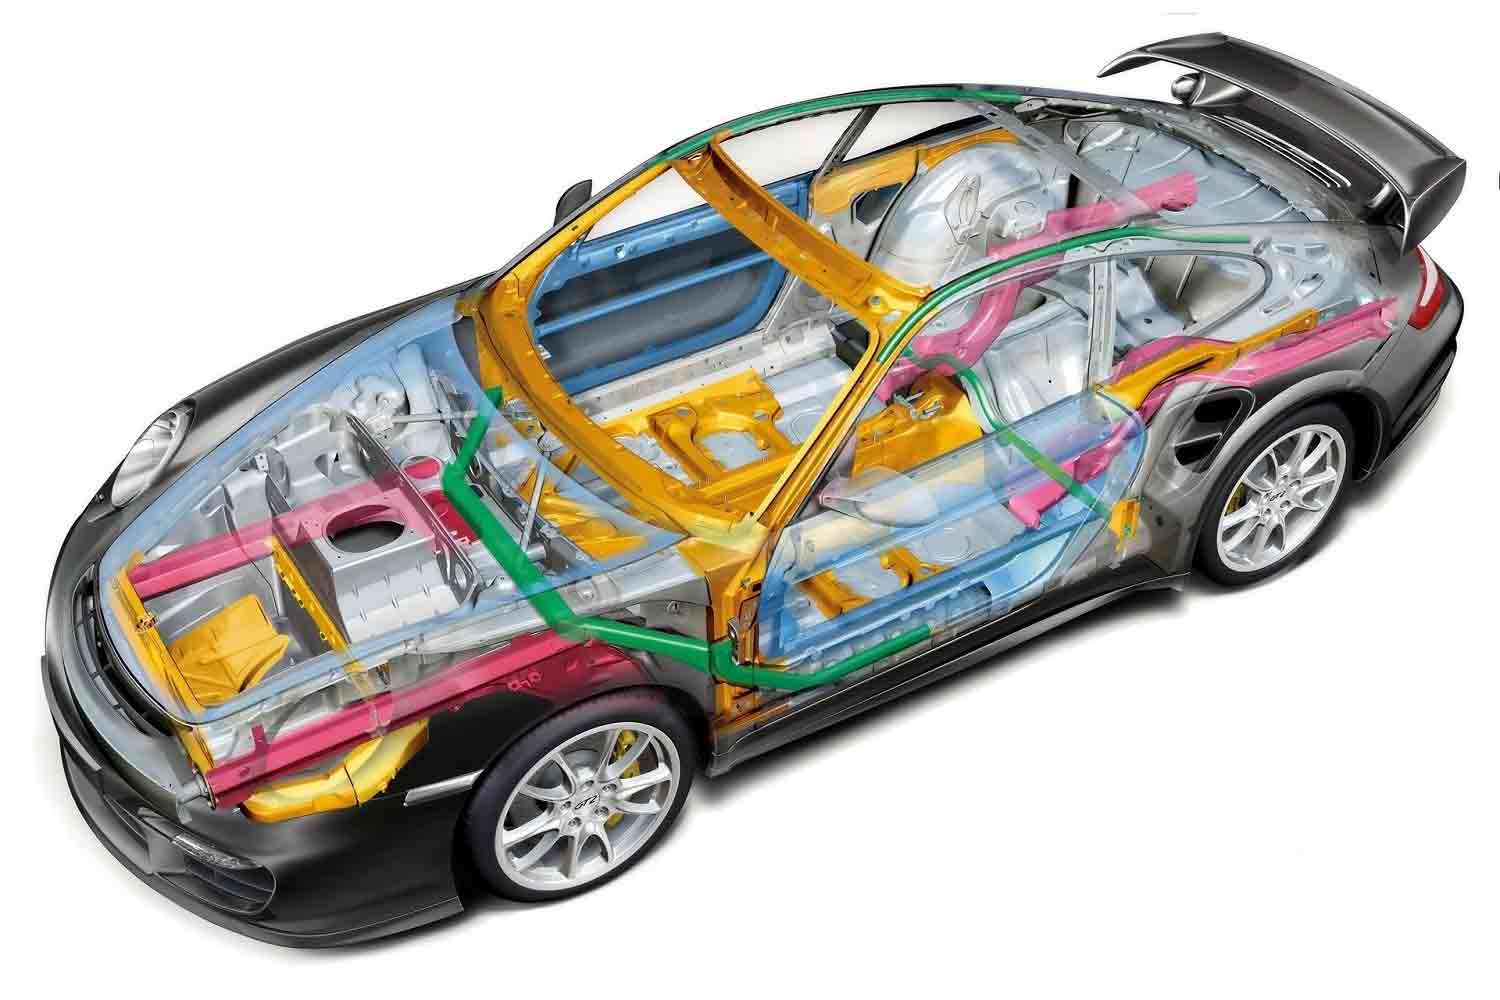 конструкция автомобиля где цветом выделены алюминиевые детали